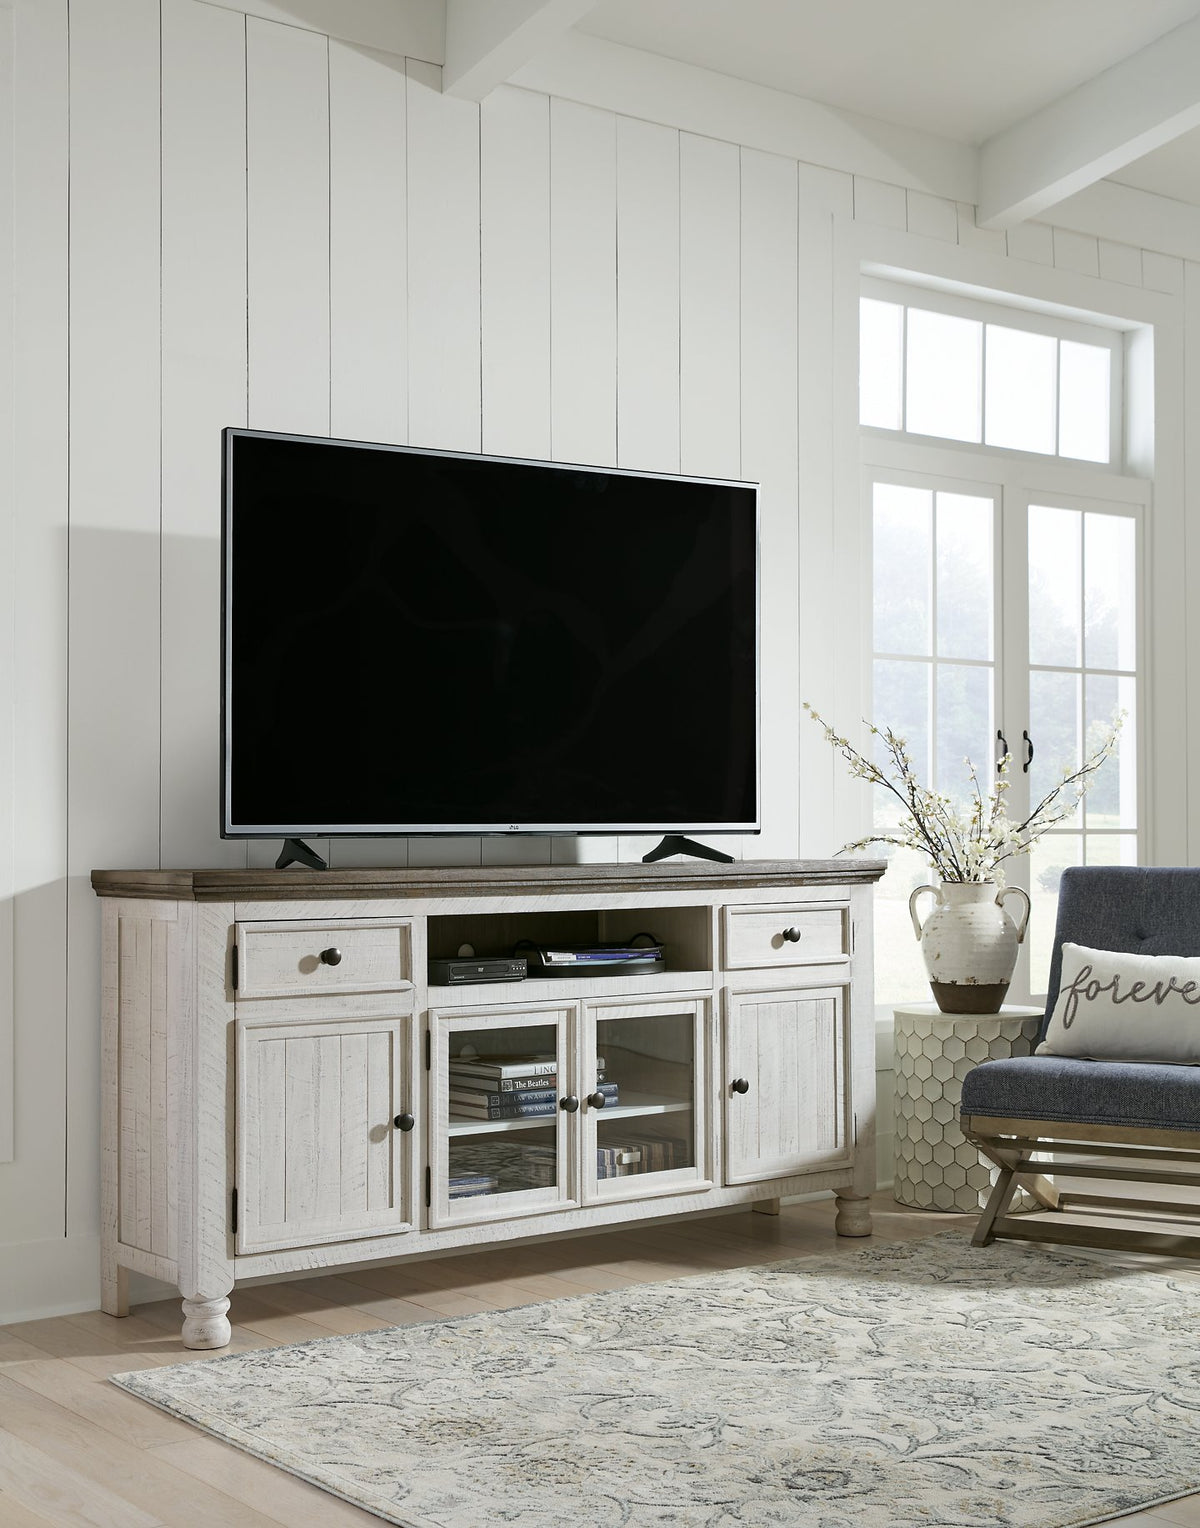 Havalance TV Stand - Half Price Furniture